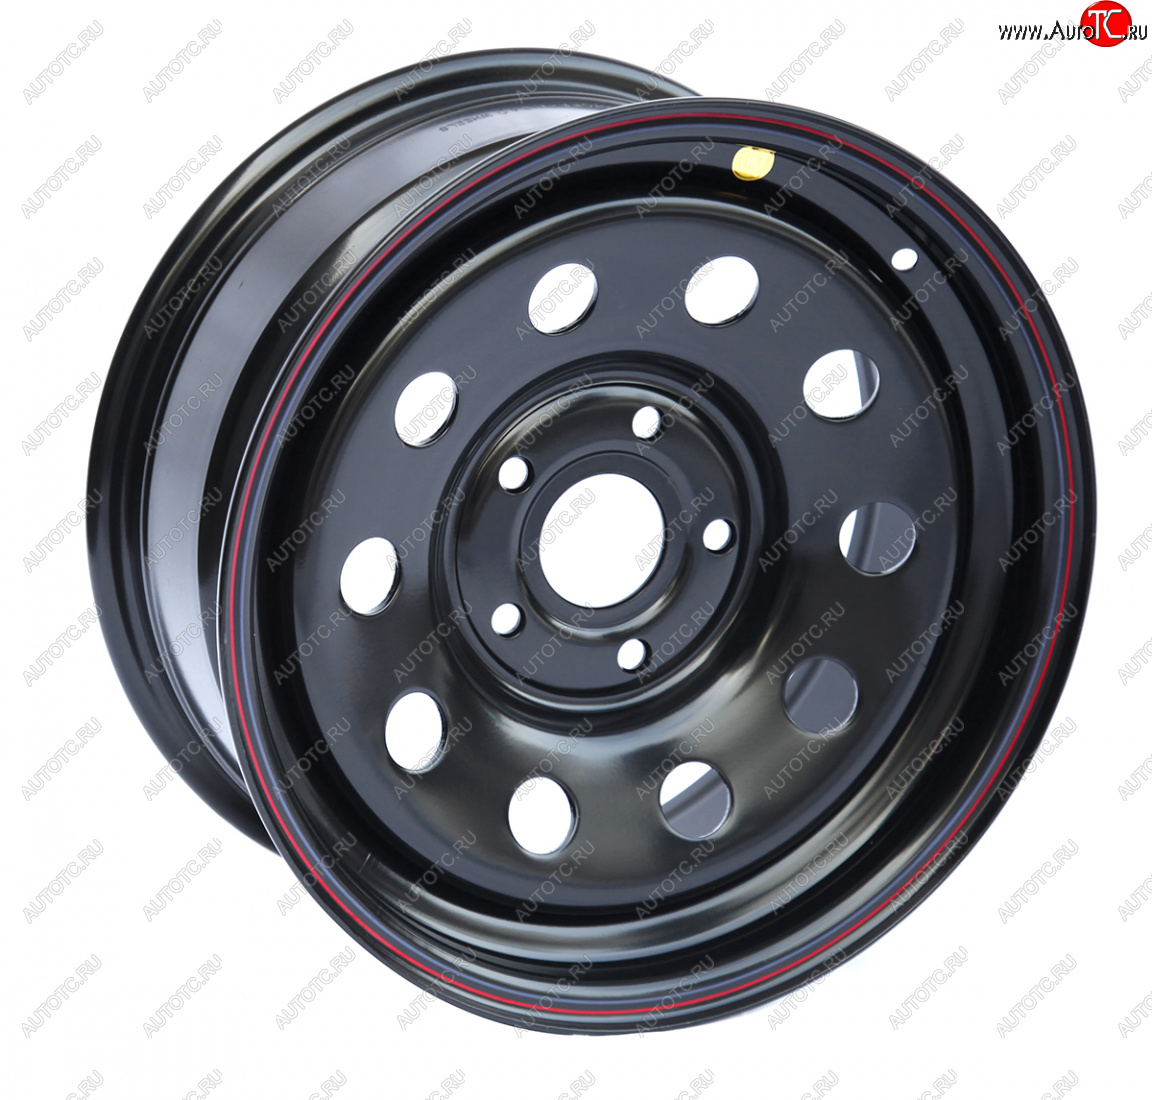 4 599 р. Штампованый диск OFF-ROAD Wheels (усиленный, треугольник мелкий) 7.0x16 BMW 5 серия E60 седан рестайлинг (2007-2010) 5x120.0xDIA72.6xET20.0 (Цвет: черный)